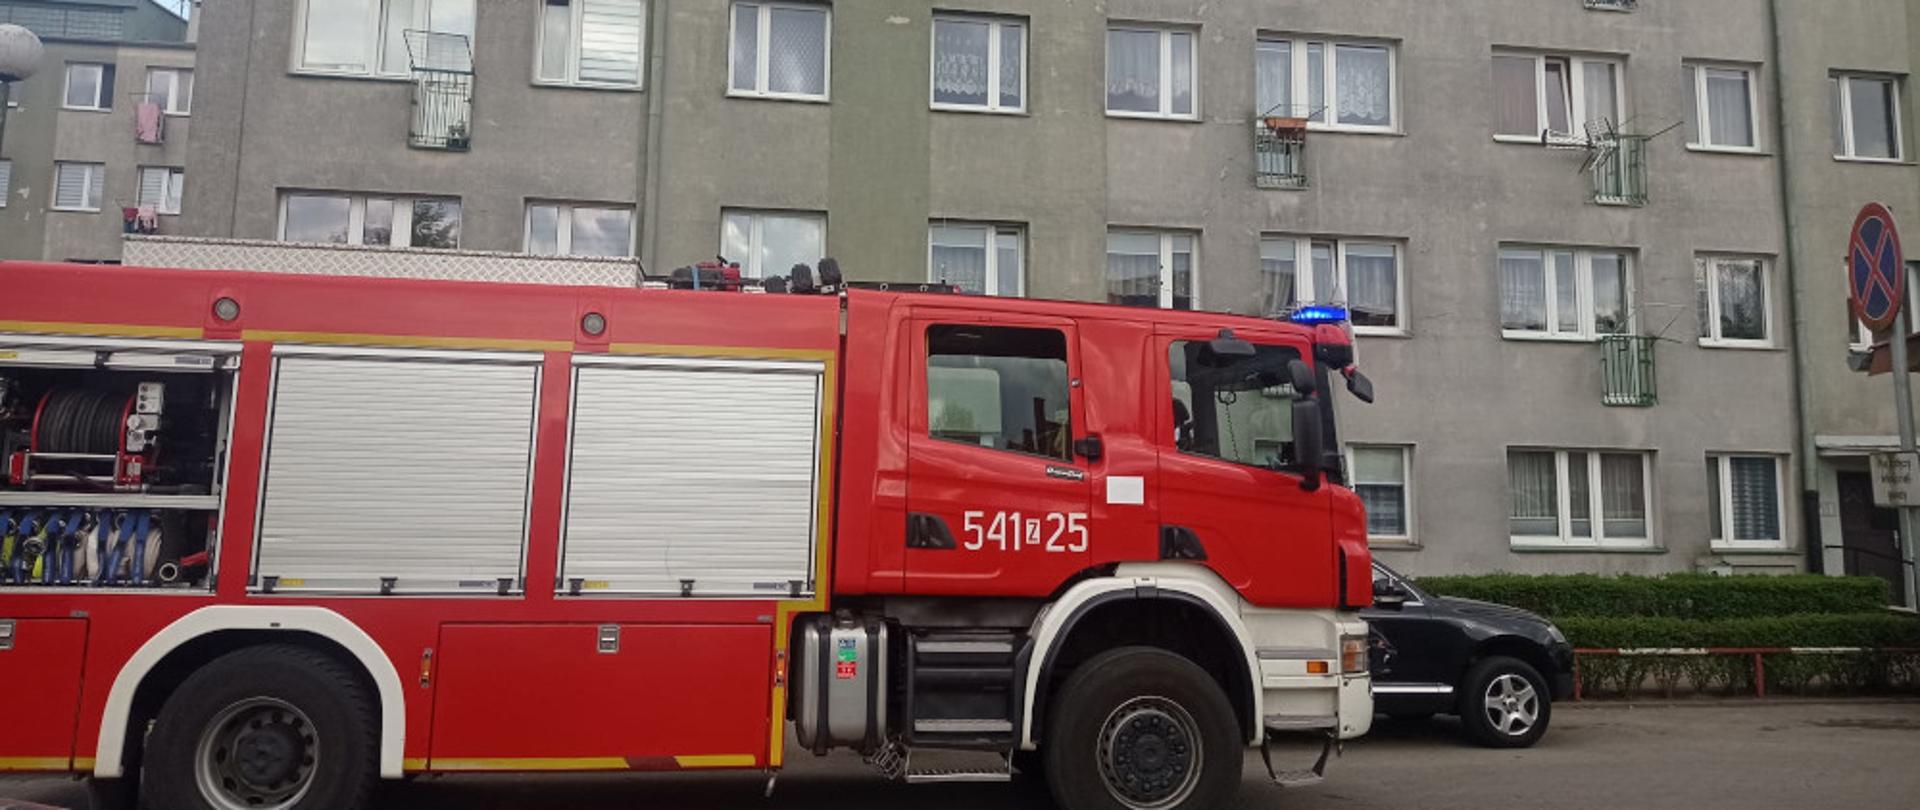 Pożar mieszkania w budynku wielorodzinnym w miejscowości Szczecinek- samochód ratowniczo-gaśniczy koloru czerwonego na tle bloku 